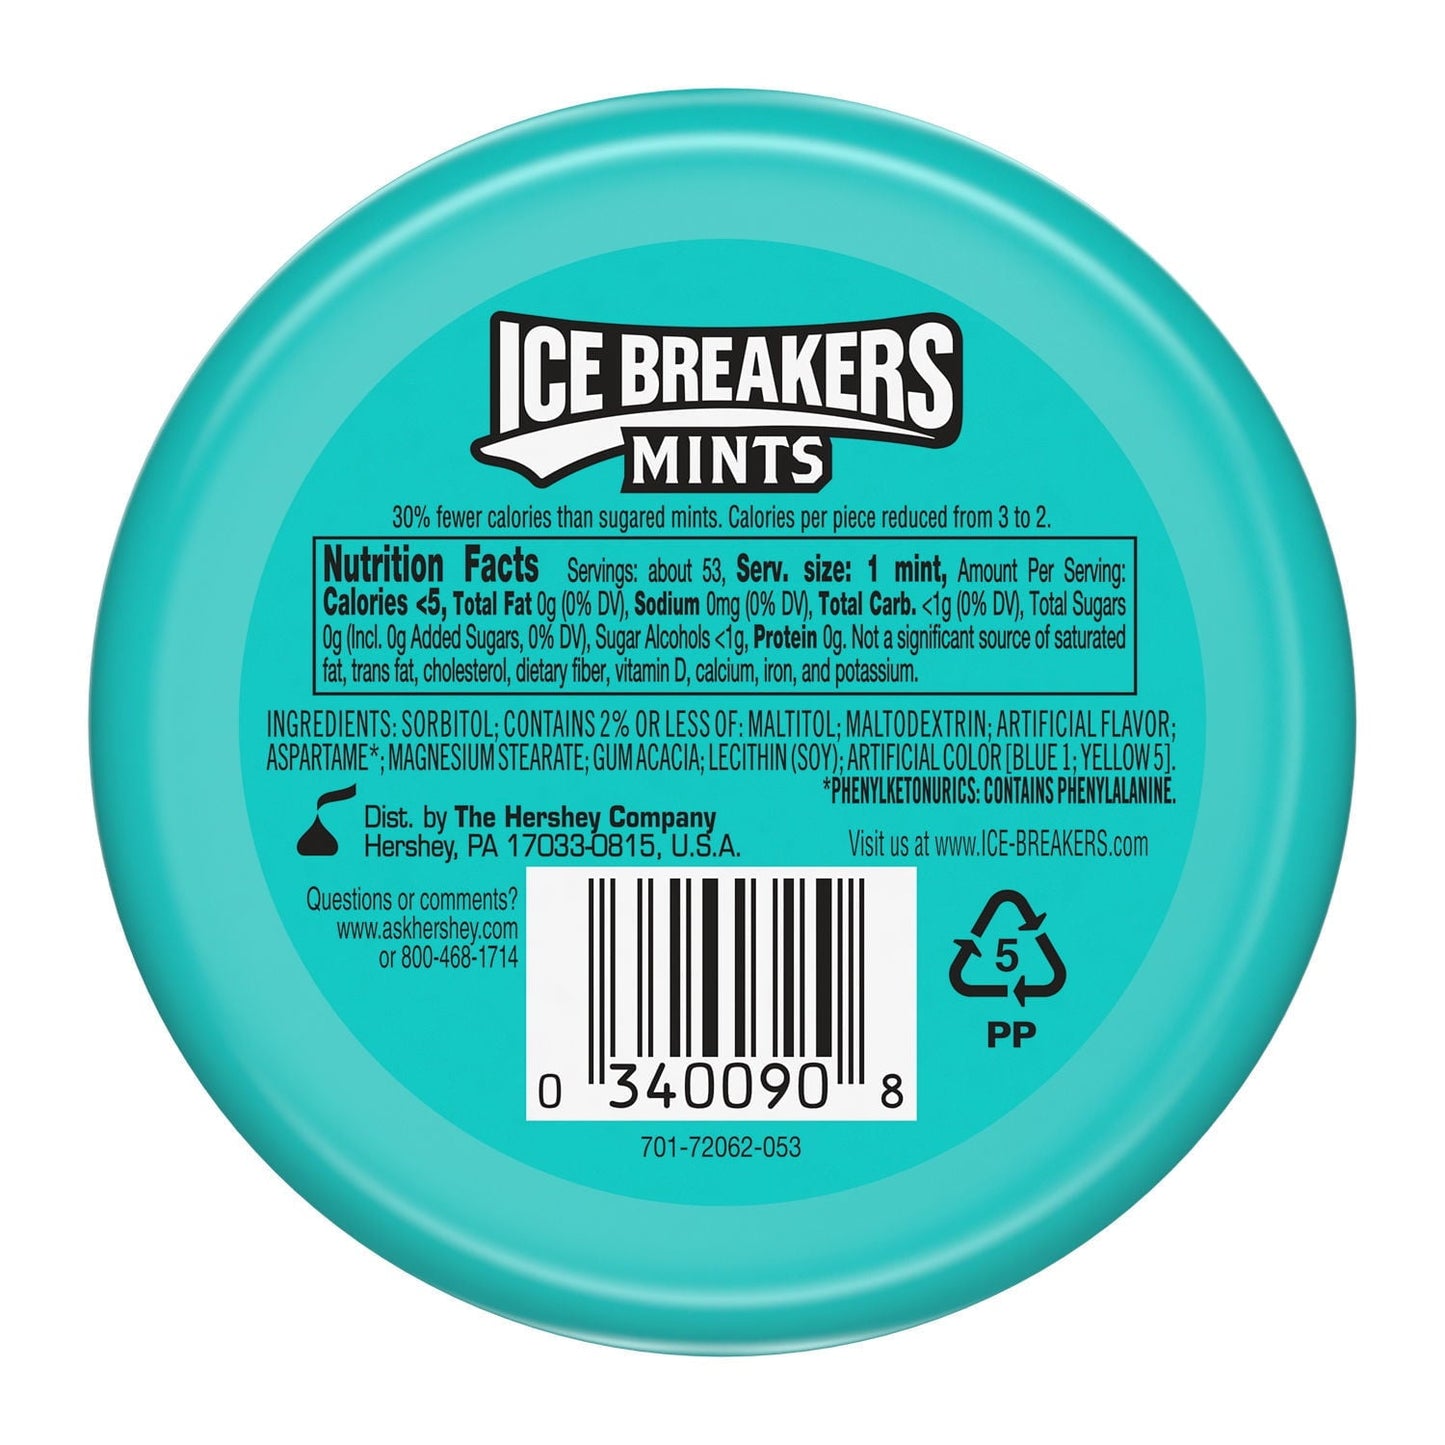 Ice Breakers Wintergreen Sugar Free Mints, Tin 1.5 oz